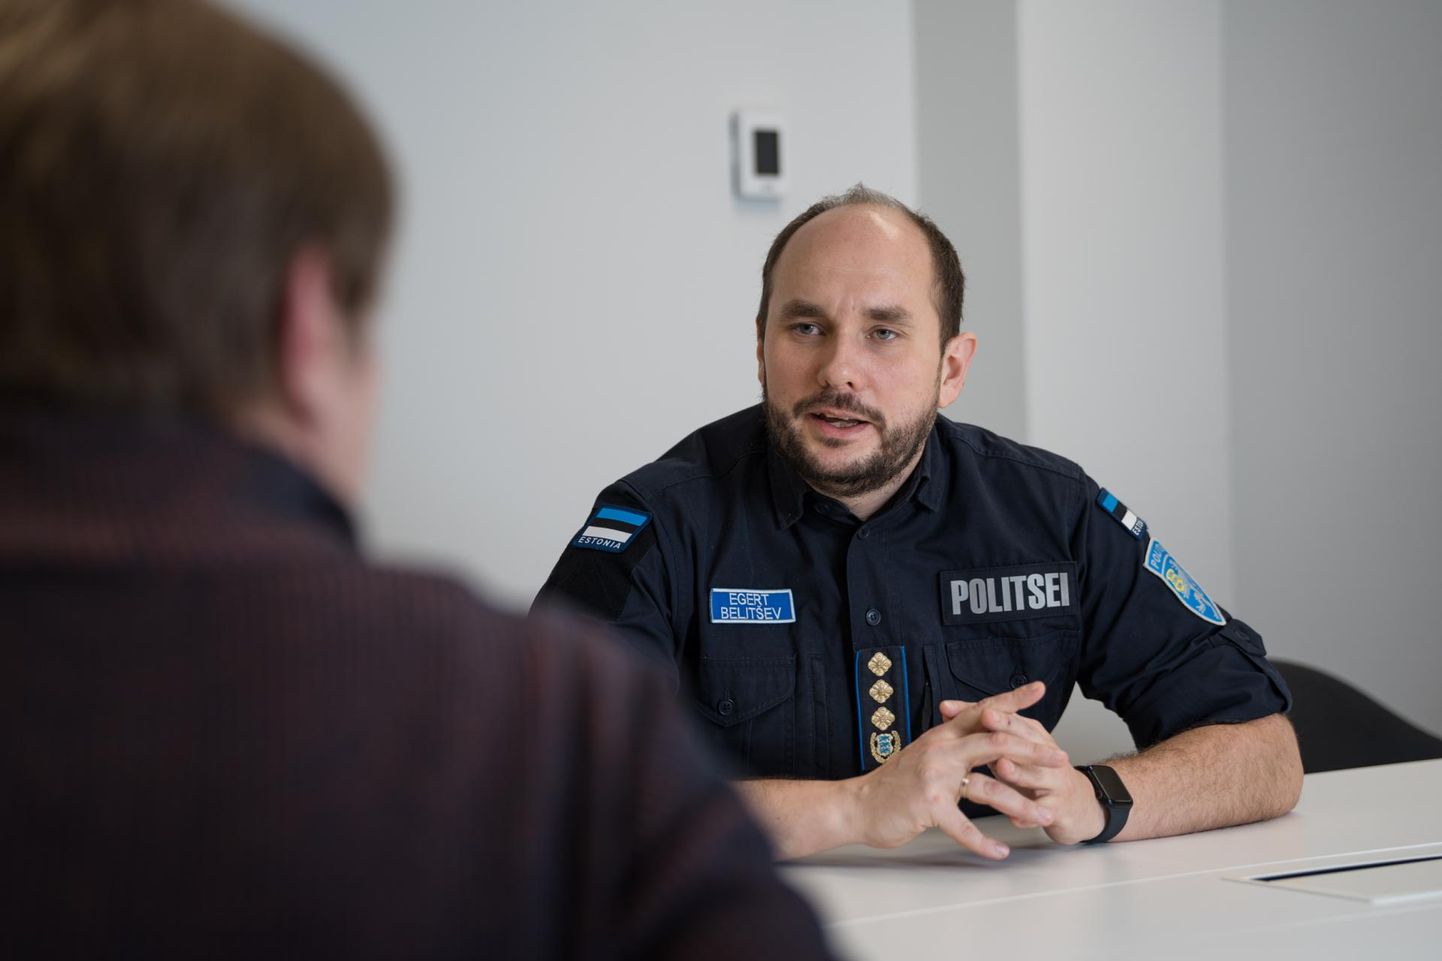 Politsei- ja piirivalveameti peadirektor Egert Belitšev leiab, et meie politseinikel peavad olema head väljaõppe- ja treeningutingimused, hea töökeskkond ja varustus, mis hoiab nende tervist ja elu.